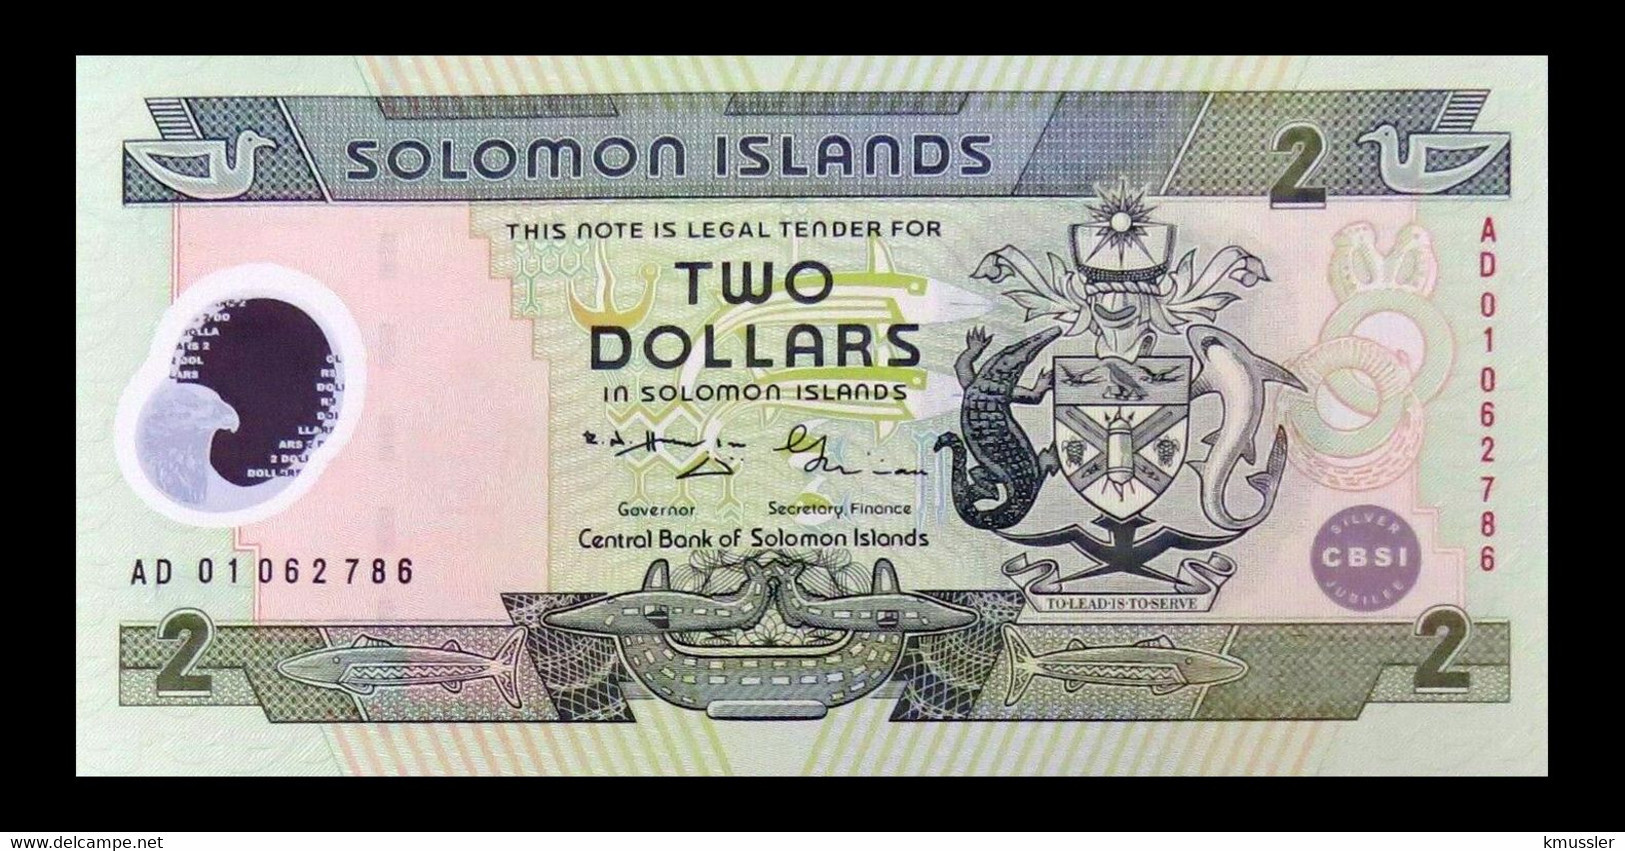 # # # Banknote Von Den Solomon-Inseln 2 Dollars UNC # # # - Isola Salomon